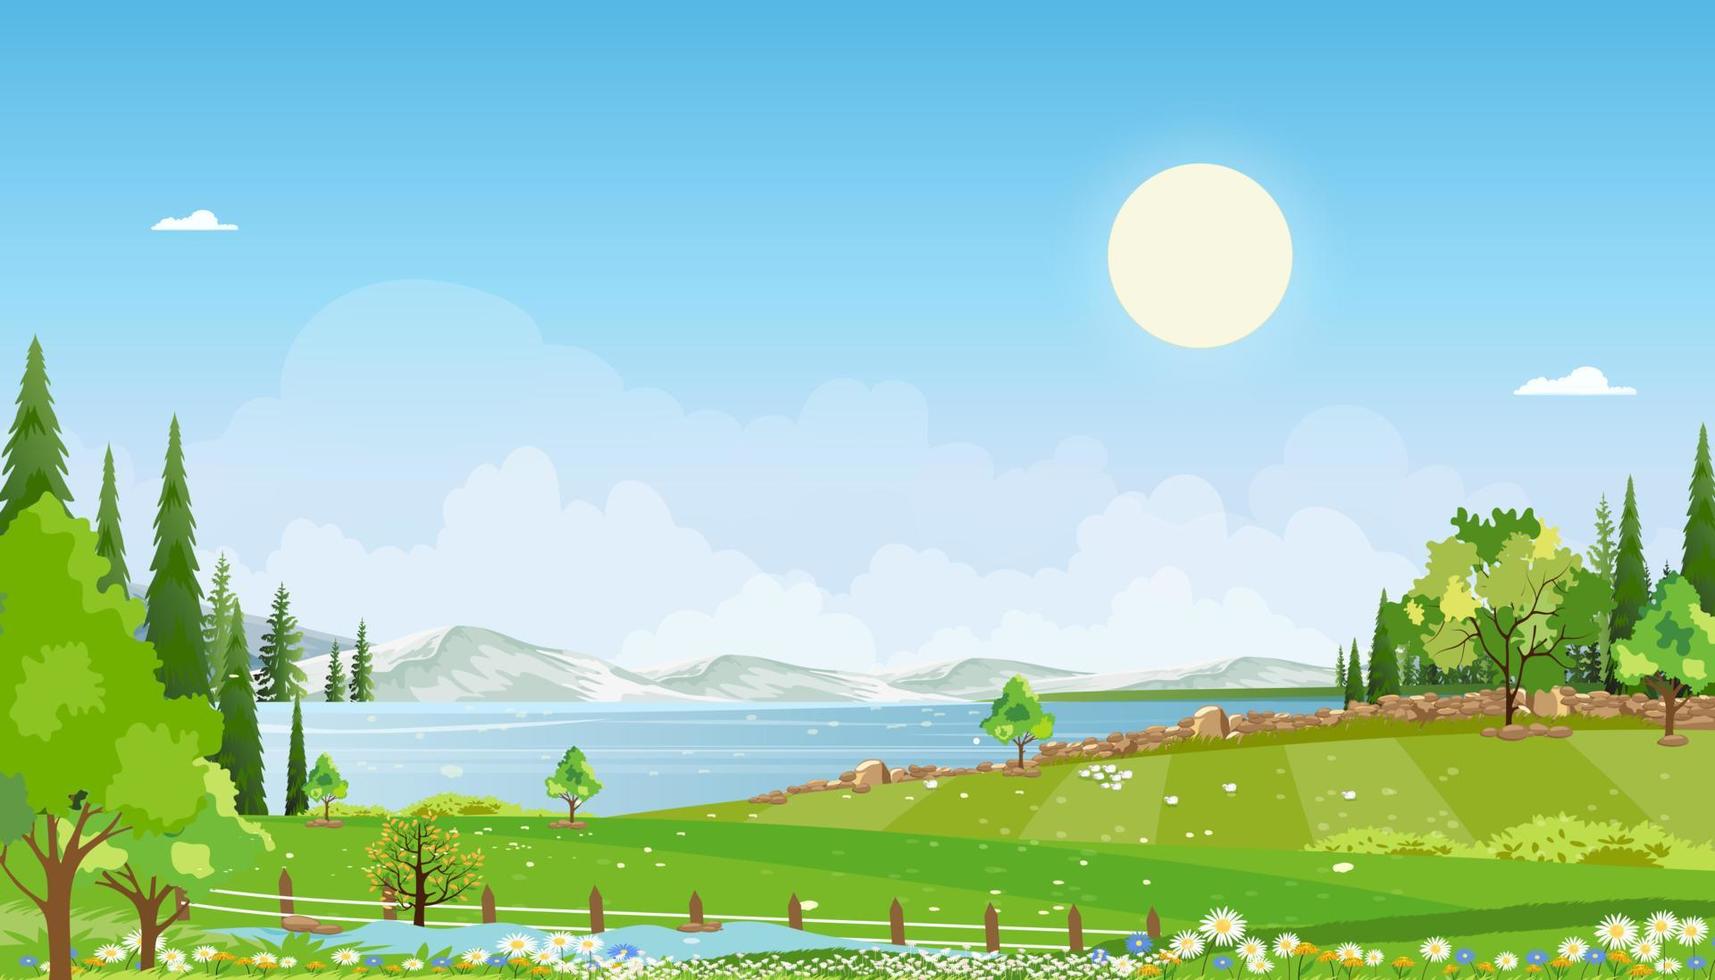 paysage de ferme rurale de printemps nature avec champ vert avec nuage, ciel bleu, horizon vectoriel campagne rurale naturelle avec arbre forestier, montagnes en journée ensoleillée, vecteur de dessin animé pour pâques, printemps, bannière d'été